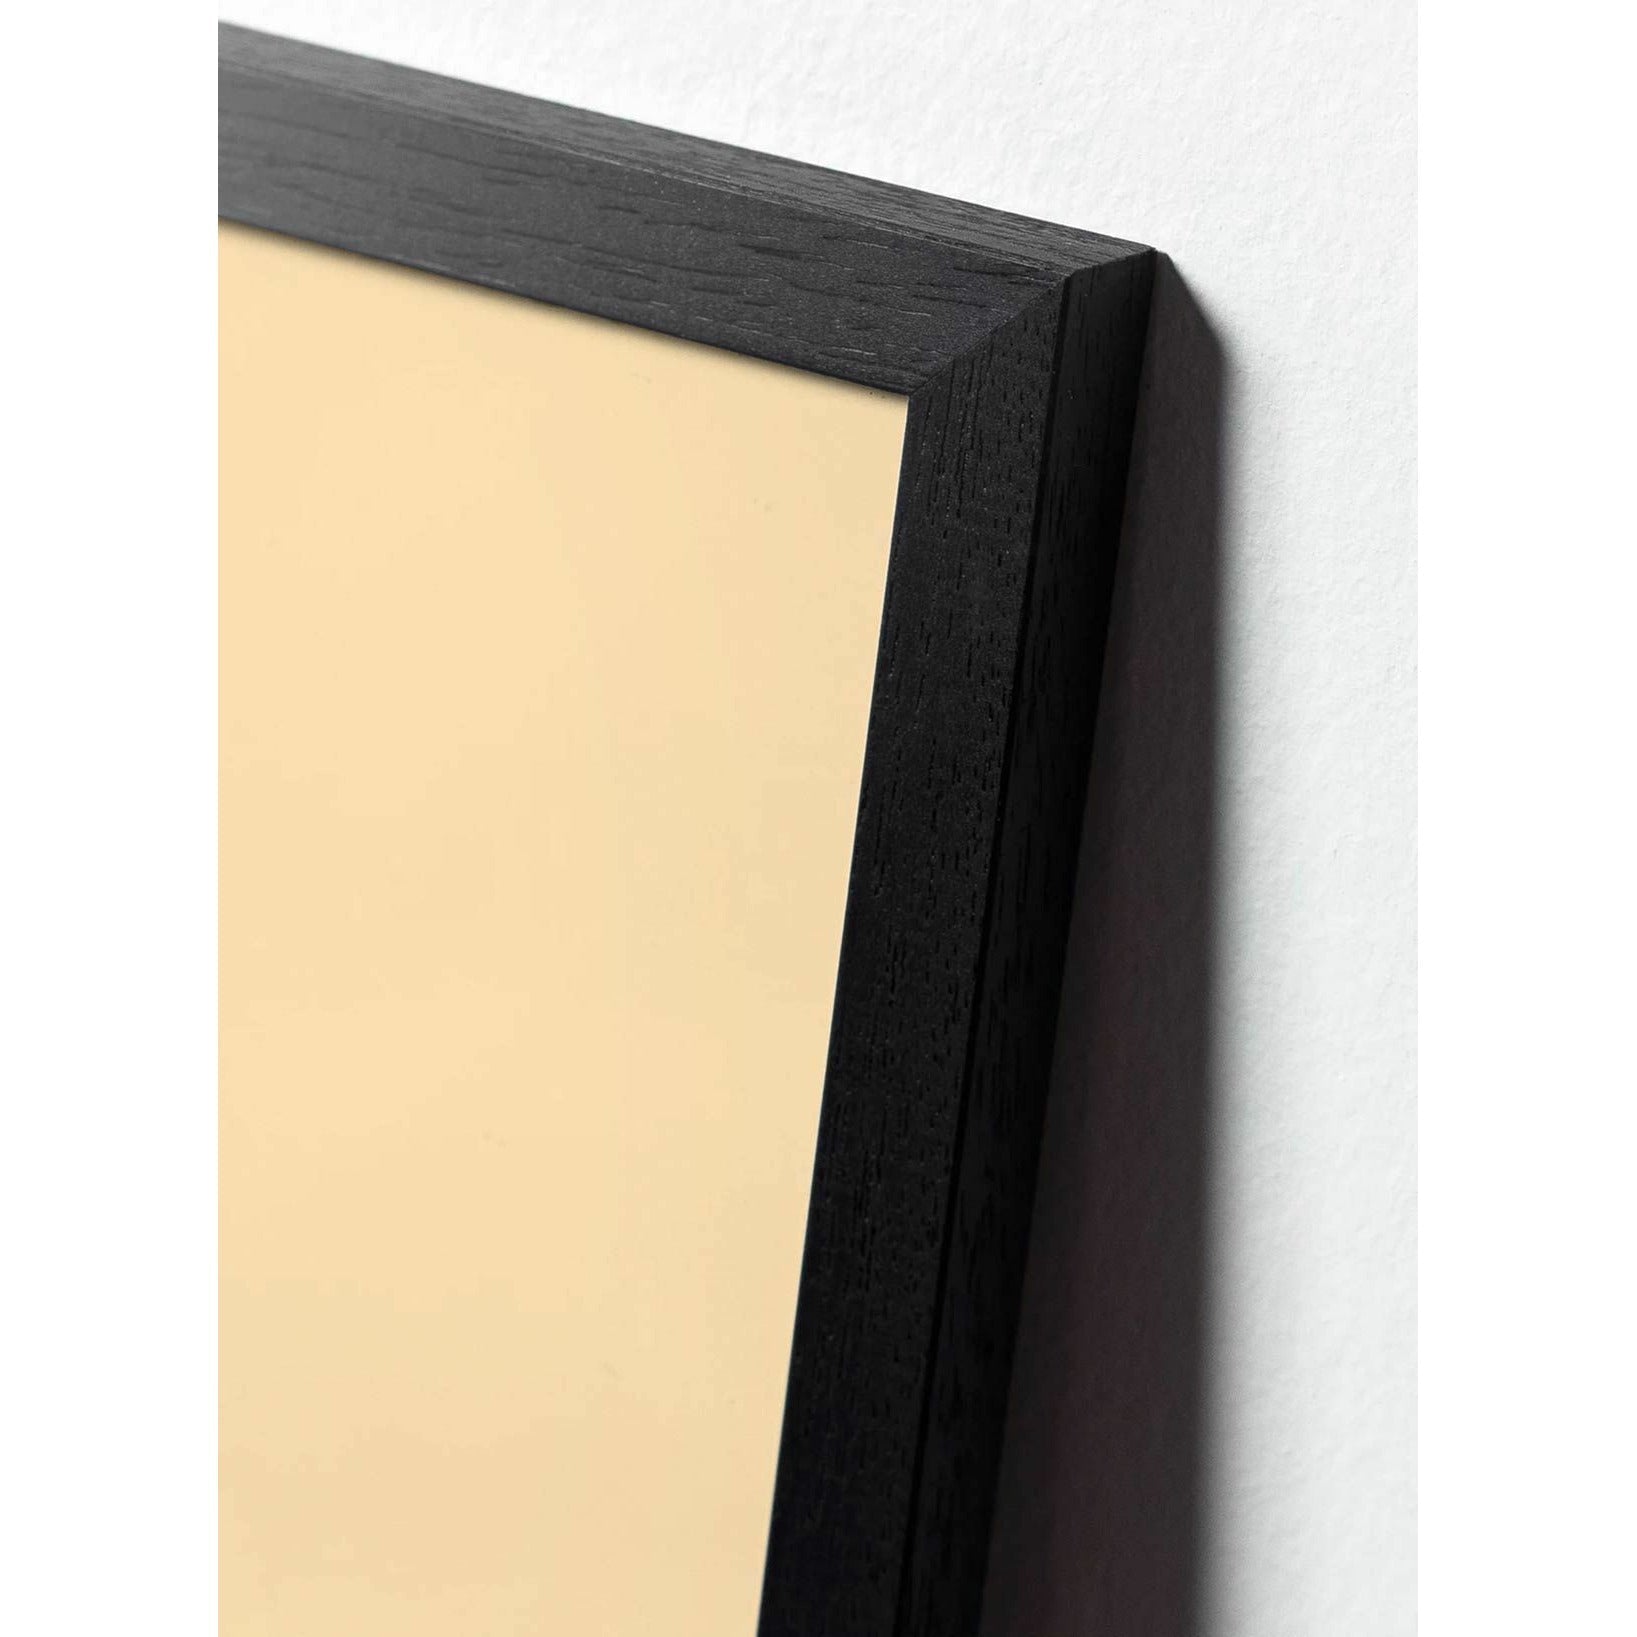 Plakát s labutí linií, rám v černém lakovaném dřevu 70 x100 cm, bílé pozadí